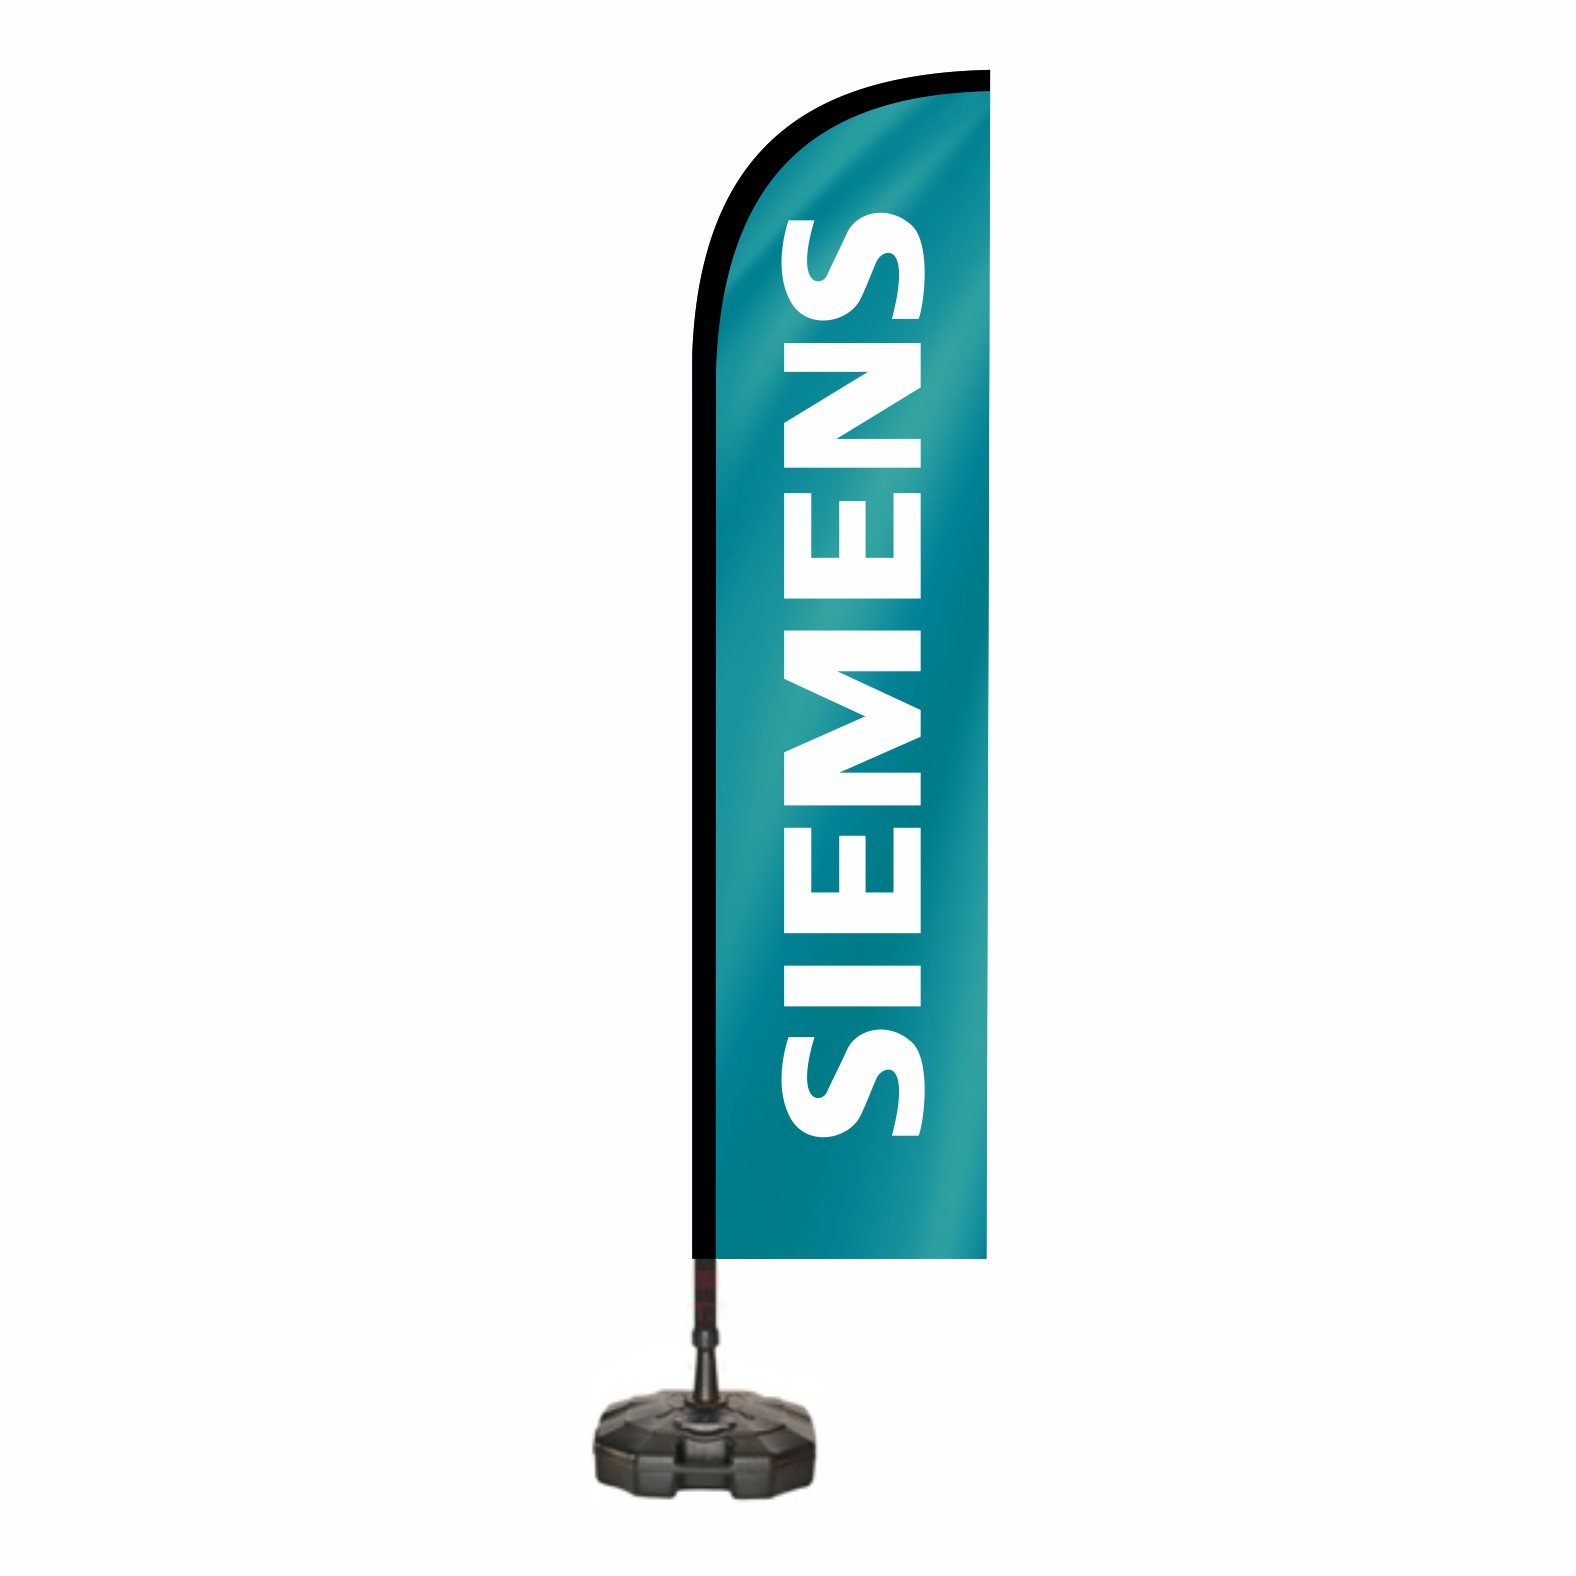 Siemens Yelken Bayraklar zellikleri